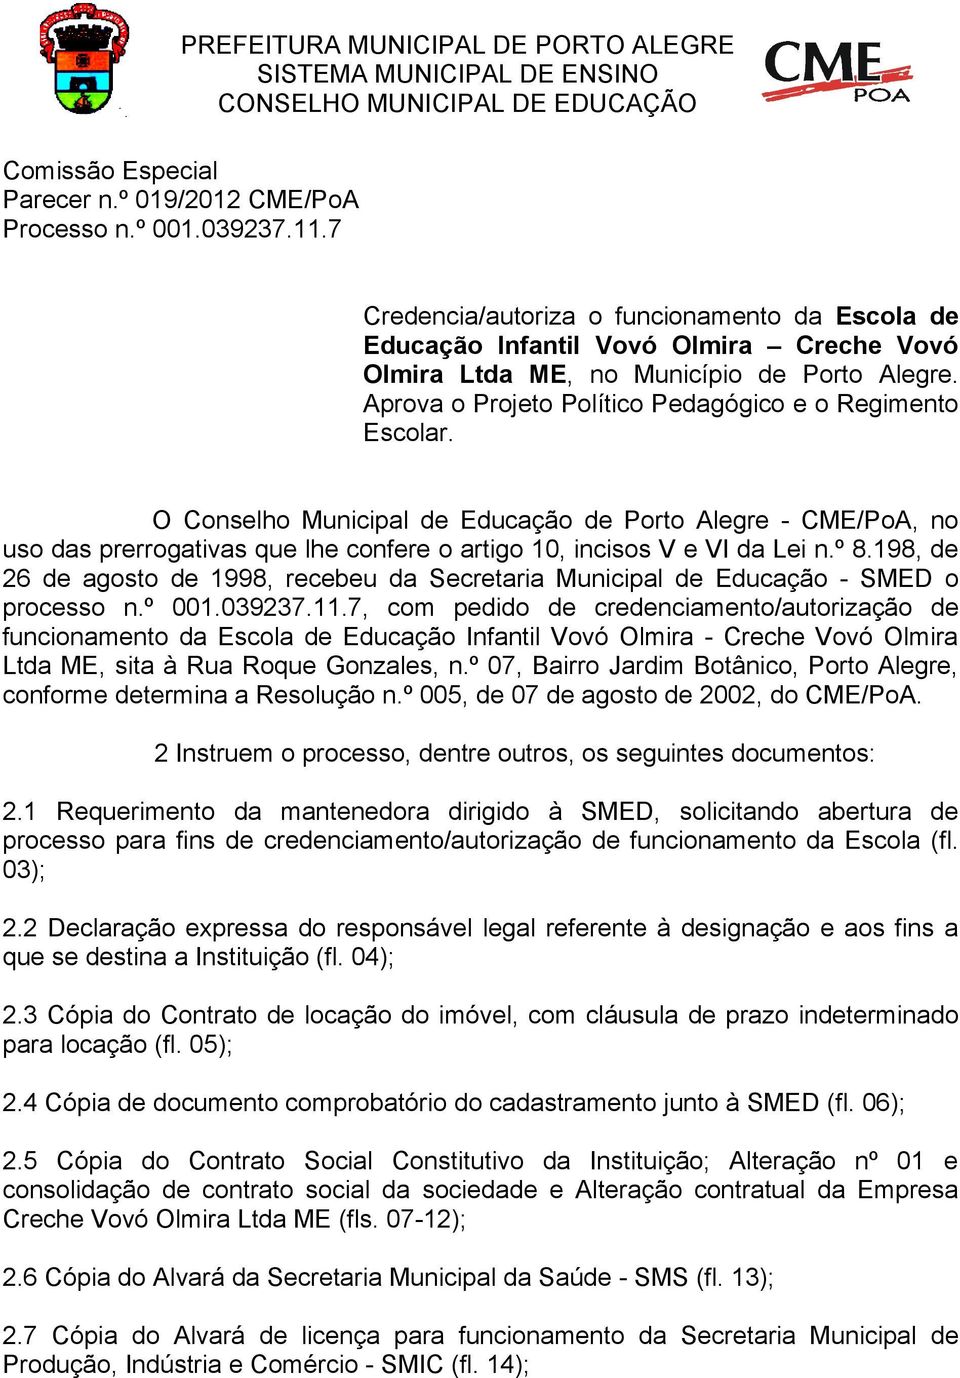 O Conselho Municipal de Educação de Porto Alegre - CME/PoA, no uso das prerrogativas que lhe confere o artigo 10, incisos V e VI da Lei n.º 8.